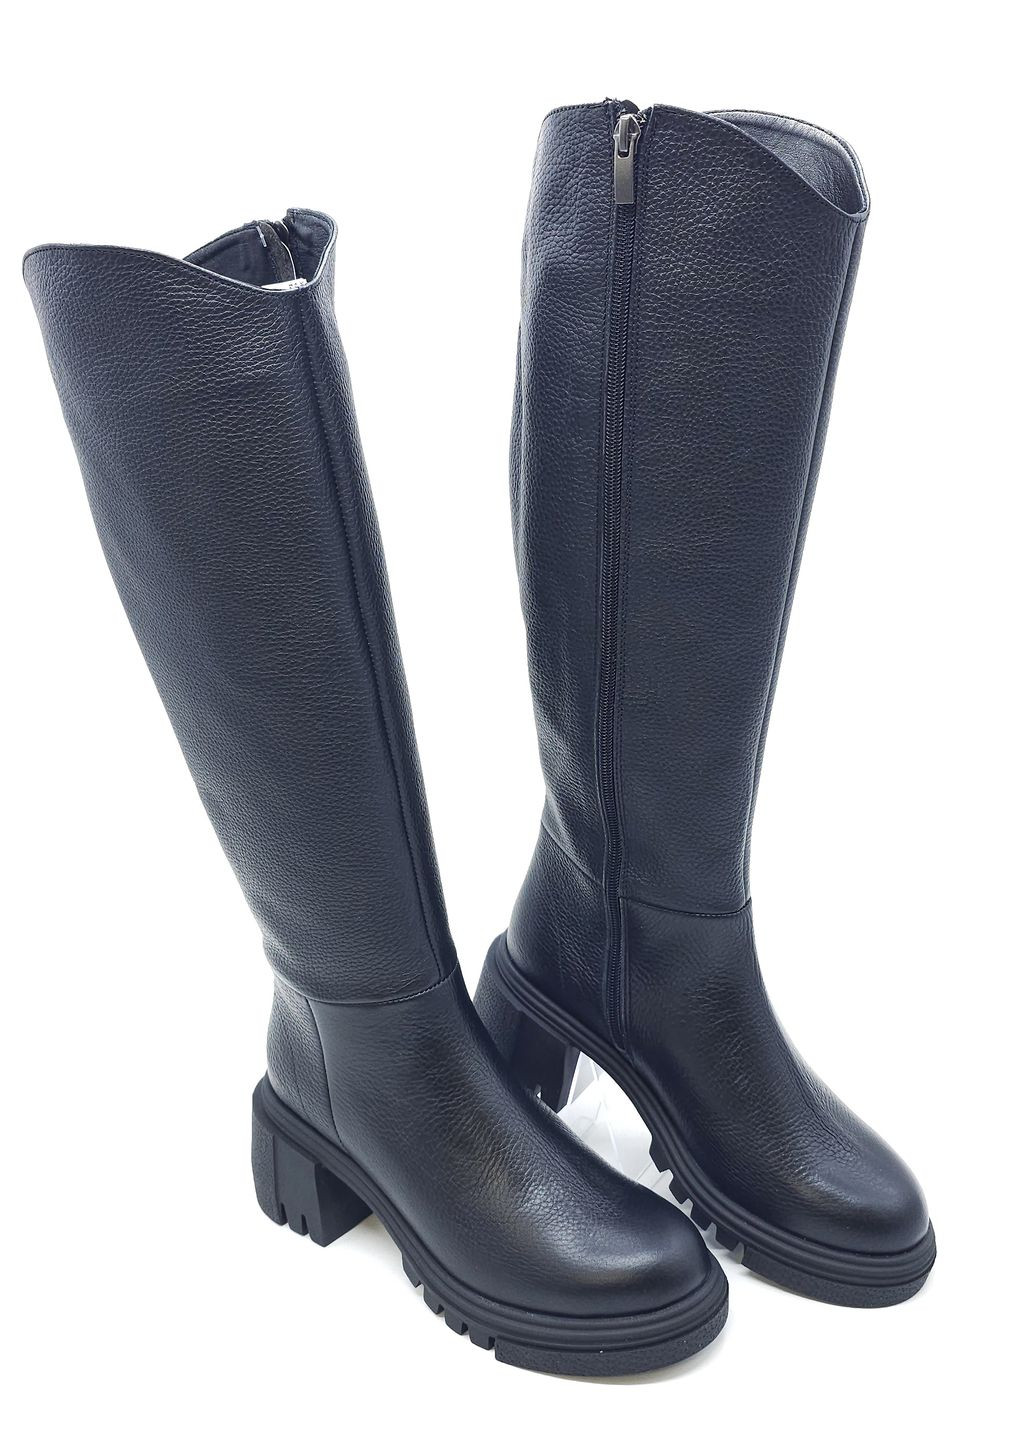 Жіночі чоботи єврозима чорні шкіряні MR-19-2 23 см (р) Morento (271828048)